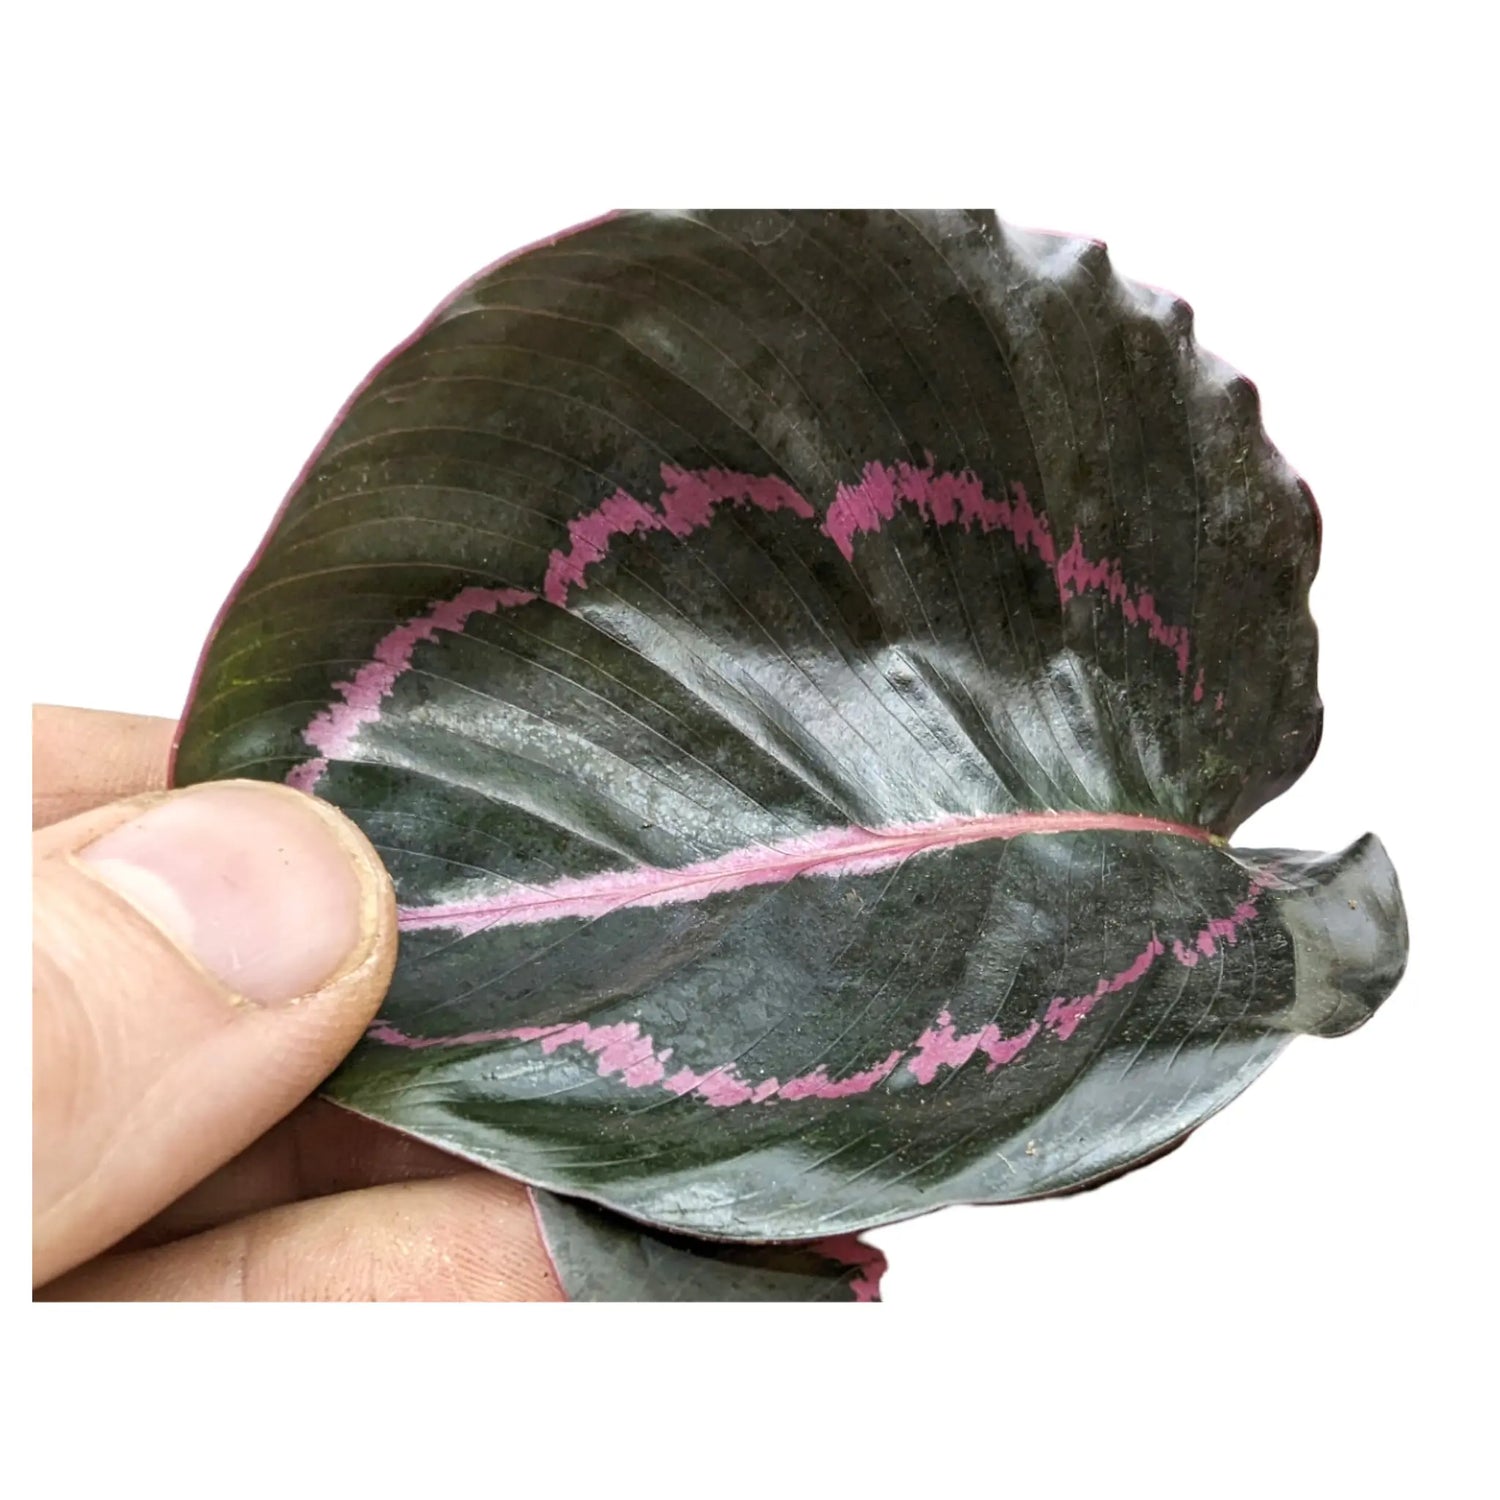 Calathea roseopicta Dottie - Rose Painted Calathea Leaf Culture